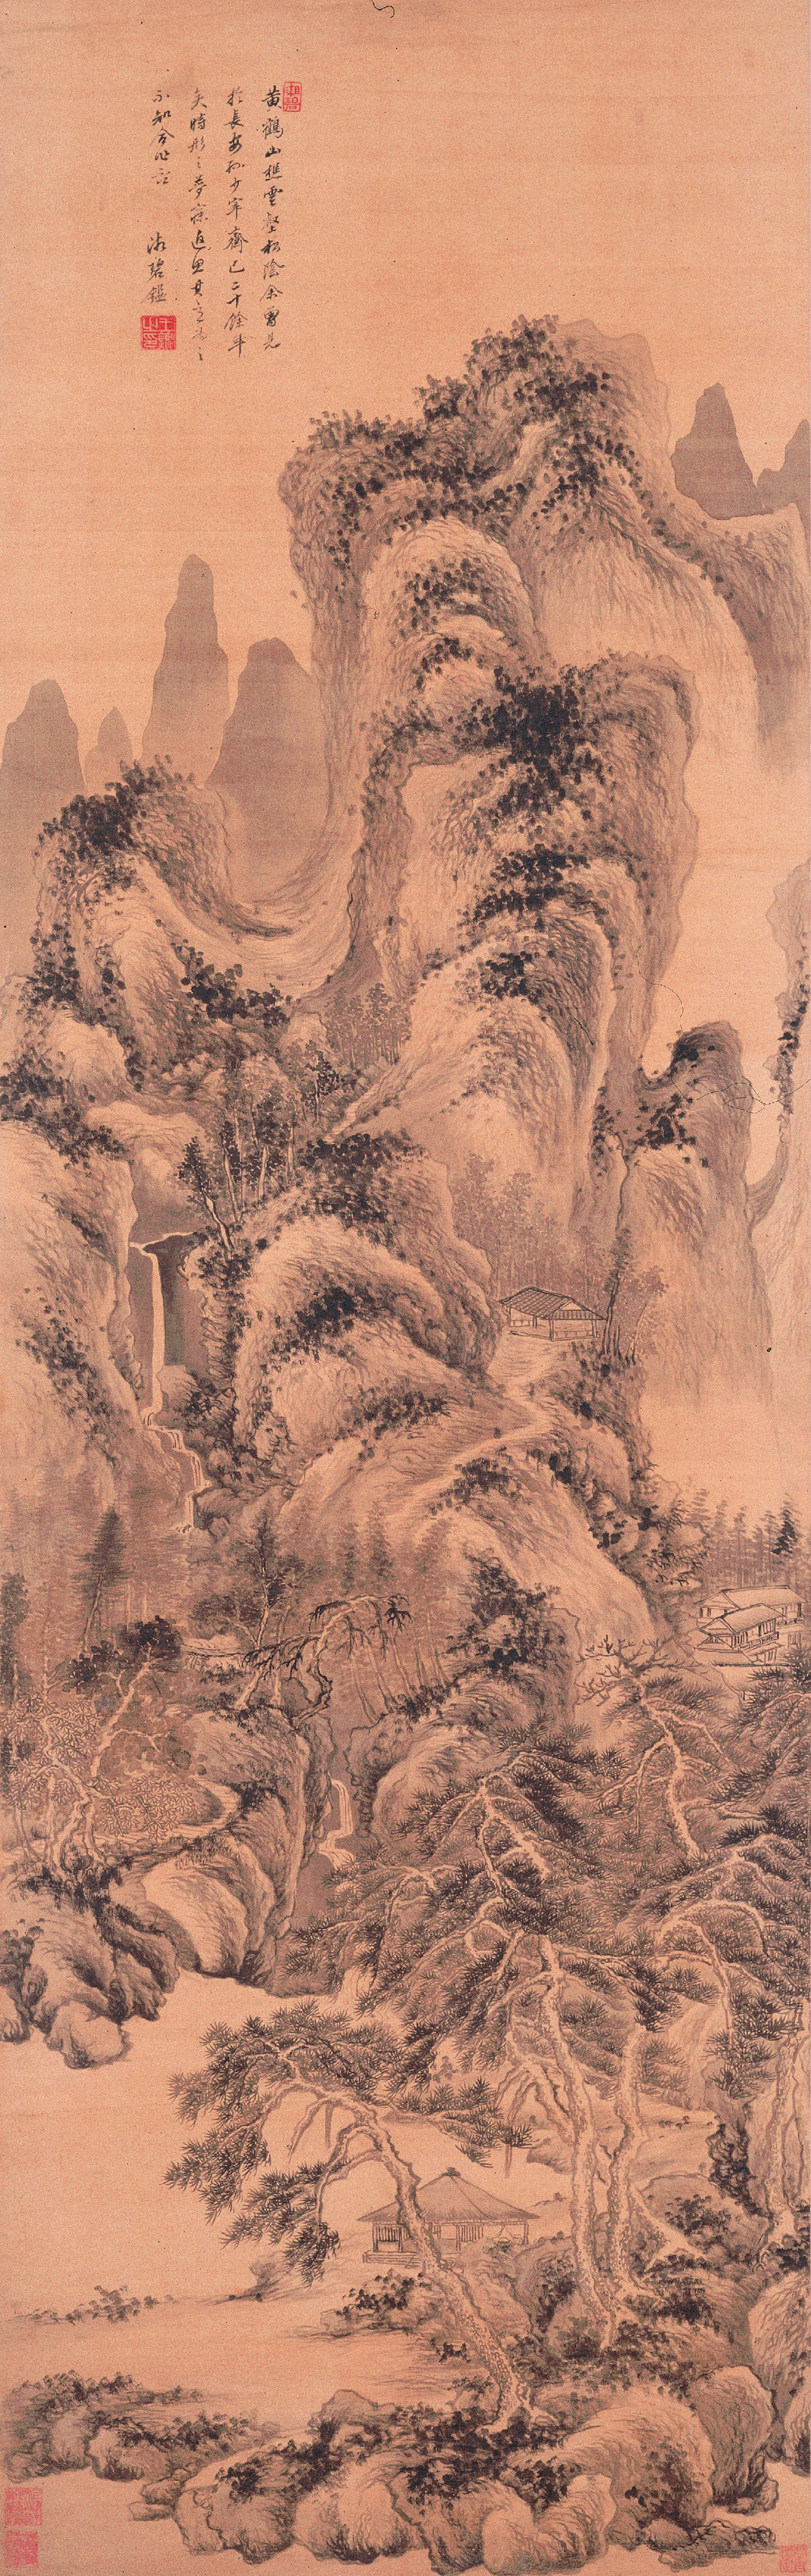 中国絵画史ノート清時代2 清初の正統派の画家、王原祁